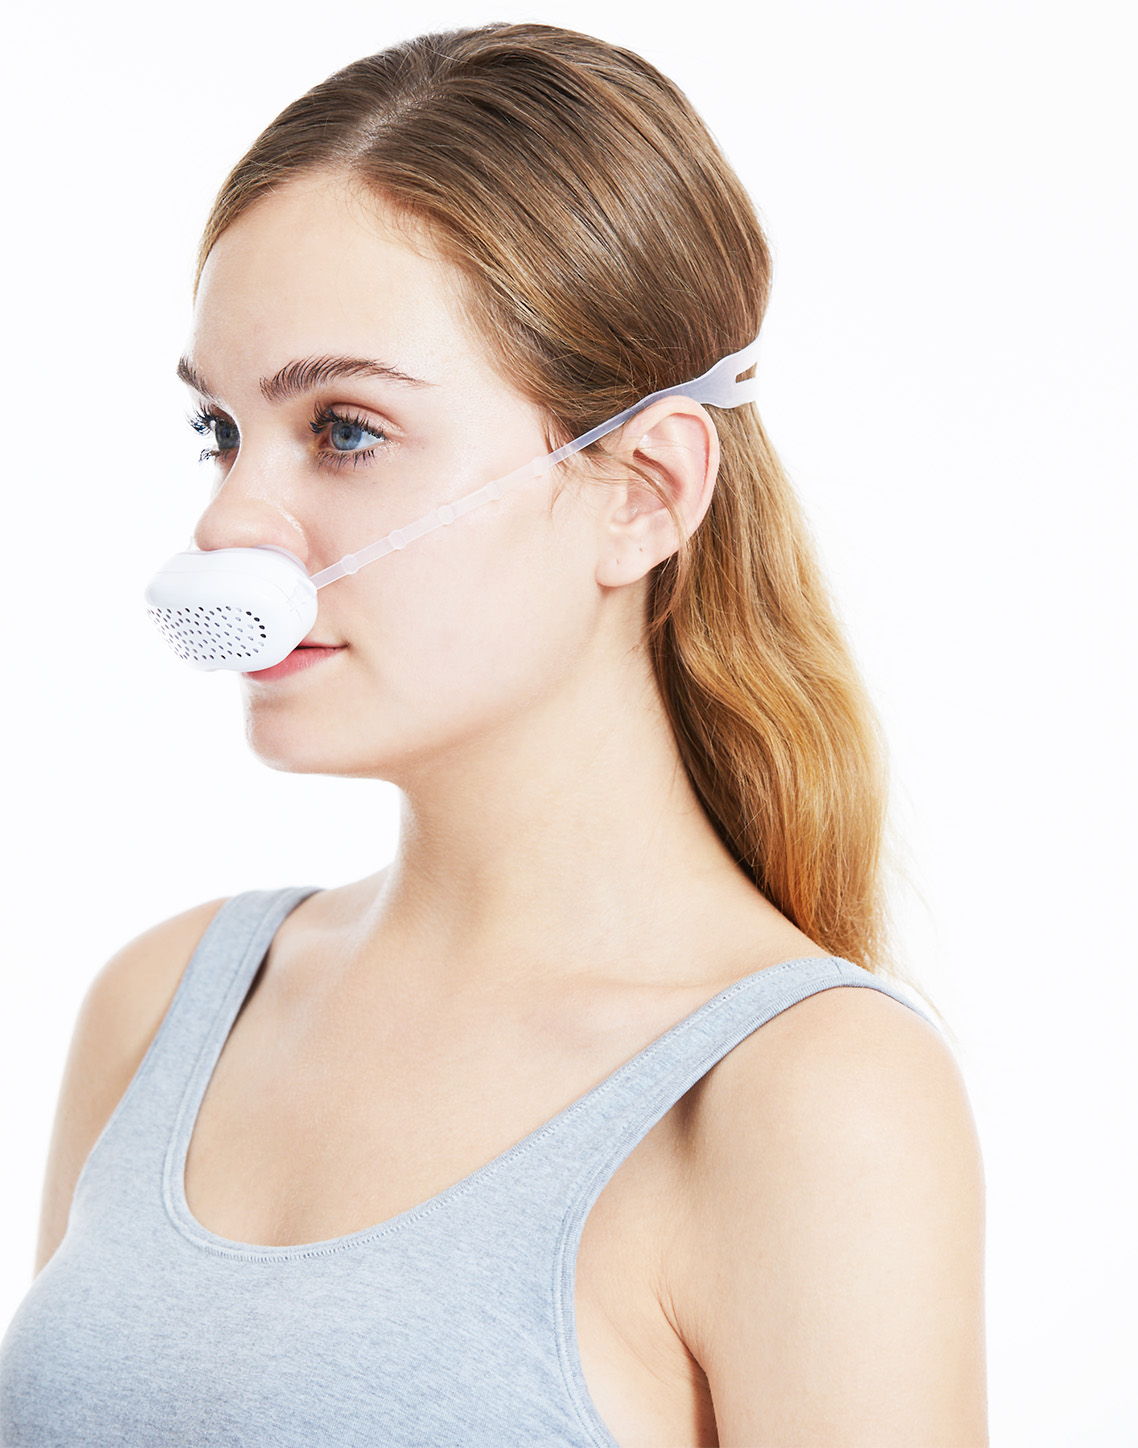 Antivirus nasal mask packing design